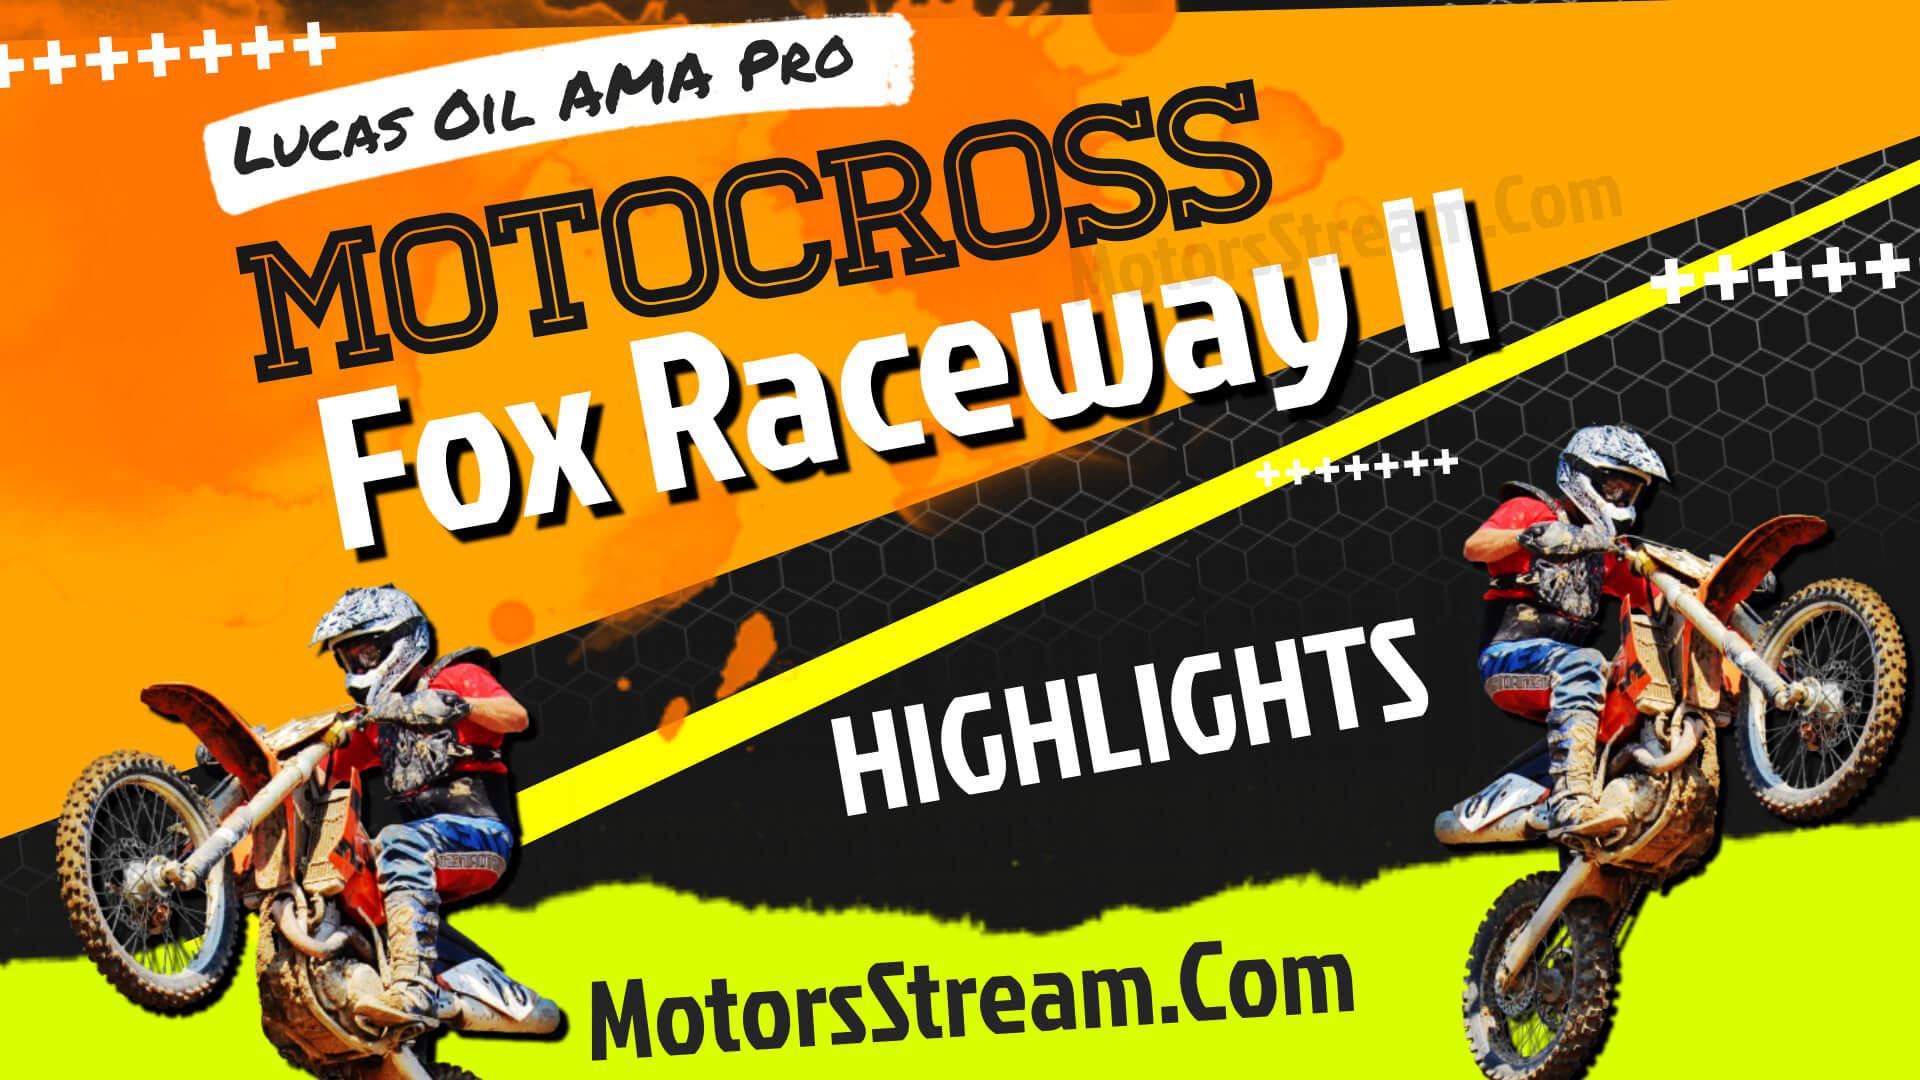 Fox Raceway 2 National Highlights 2021 Motocross